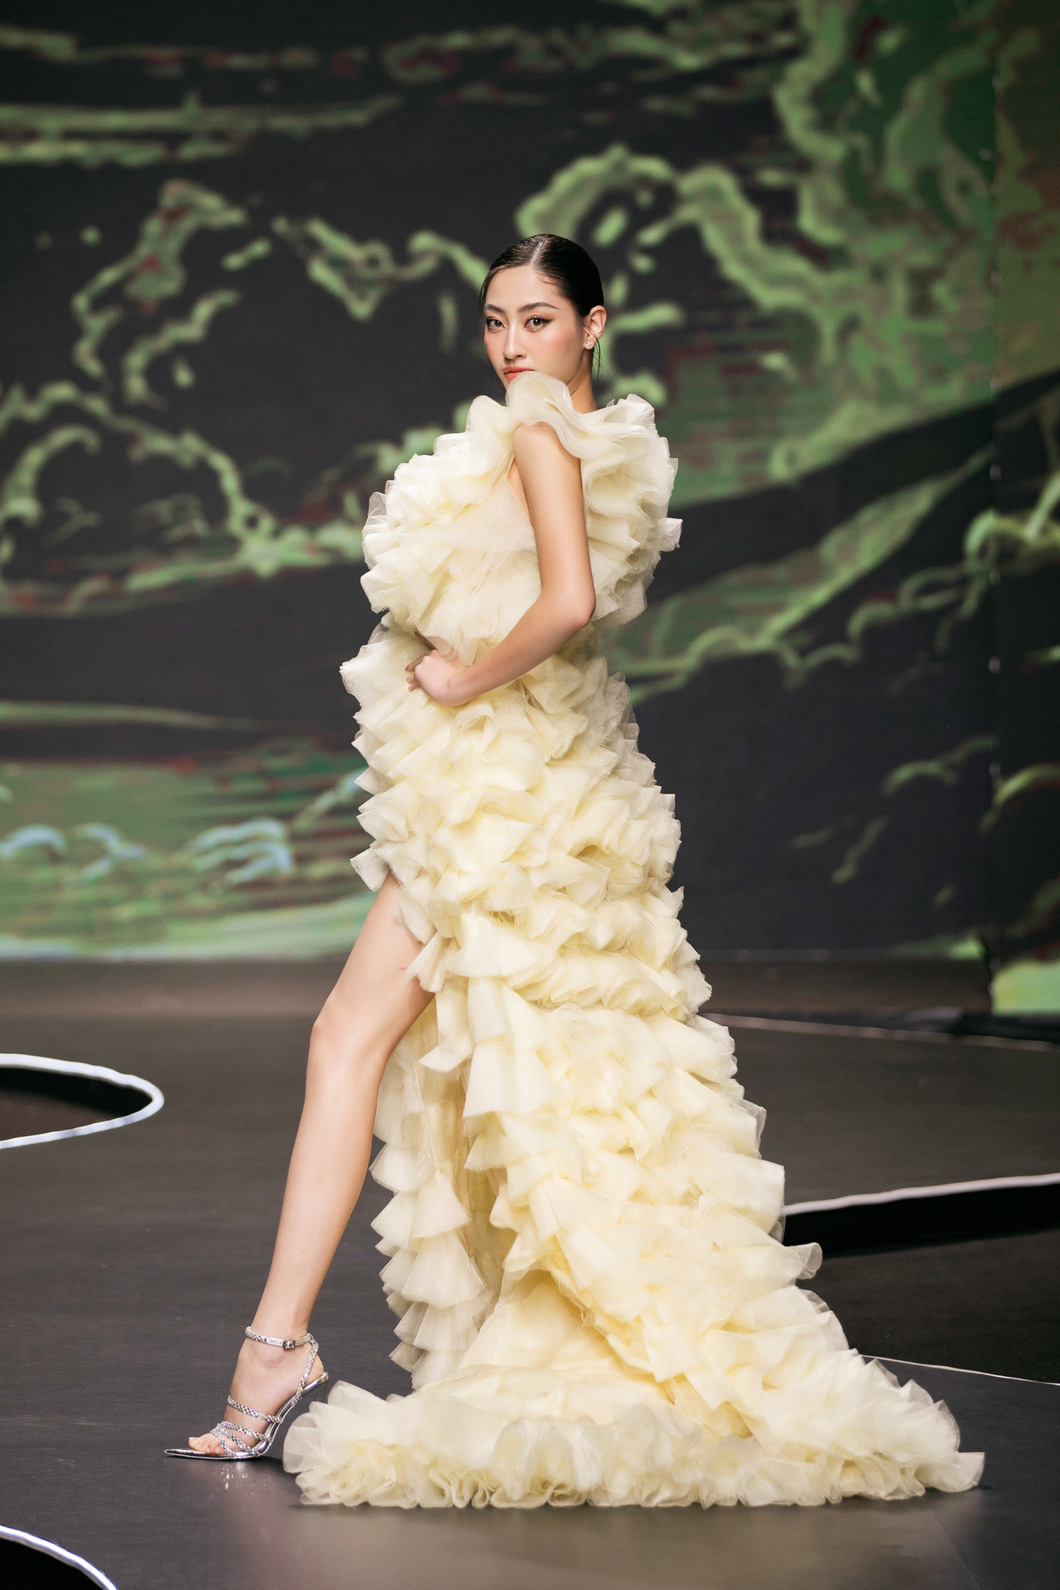 Hoa hậu Lương Thùy Linh diện thiết kế của Ivan Trần - Ảnh: KIẾNG CẬN TEAM